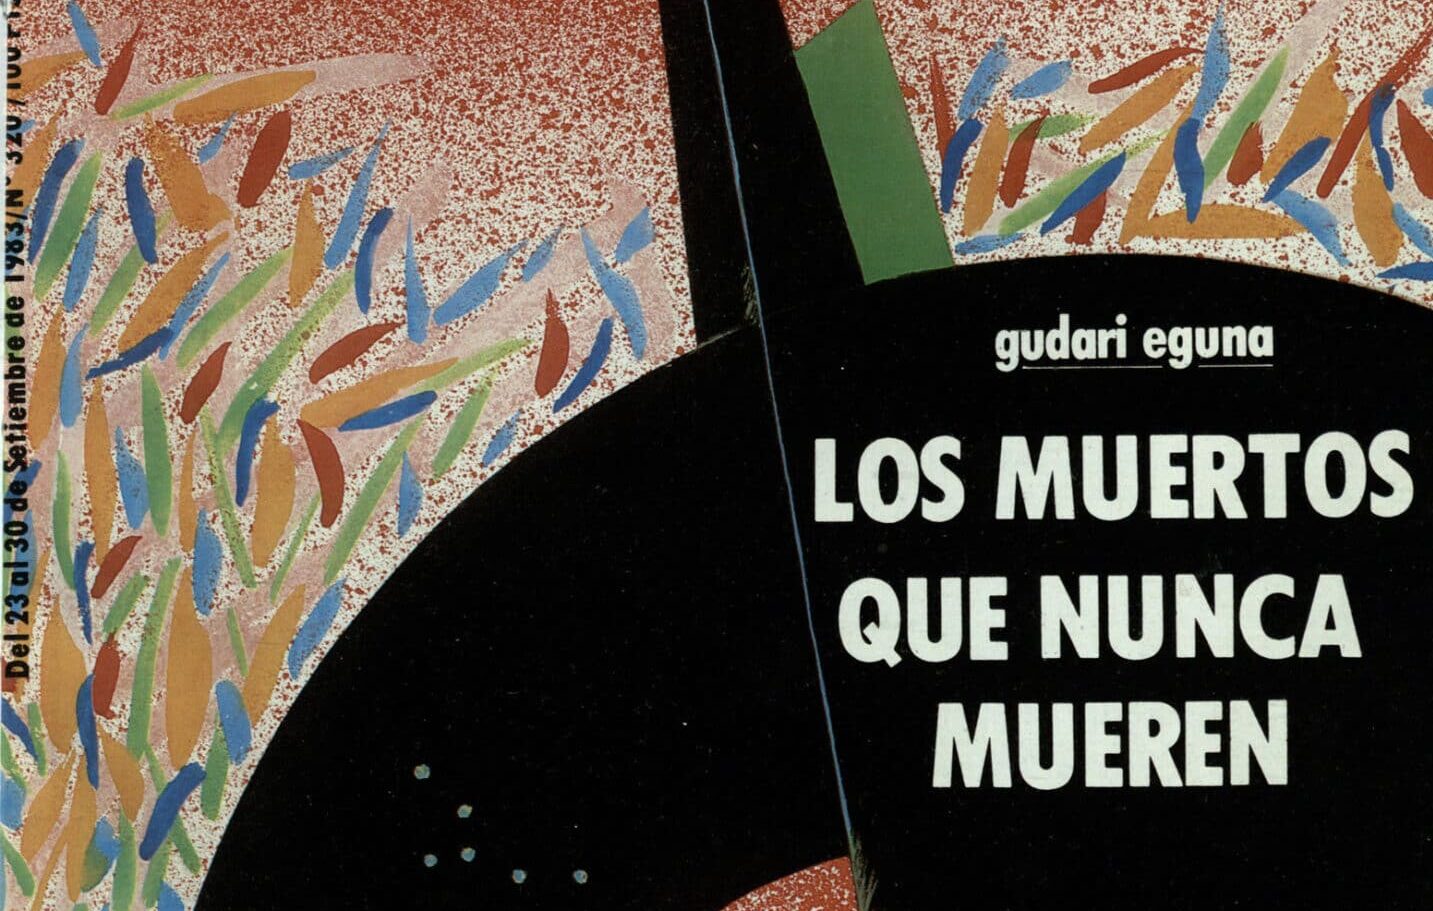 1983, cuando Aizpurua apoyó a los 'gudaris' de ETA: "Los muertos que nunca mueren"